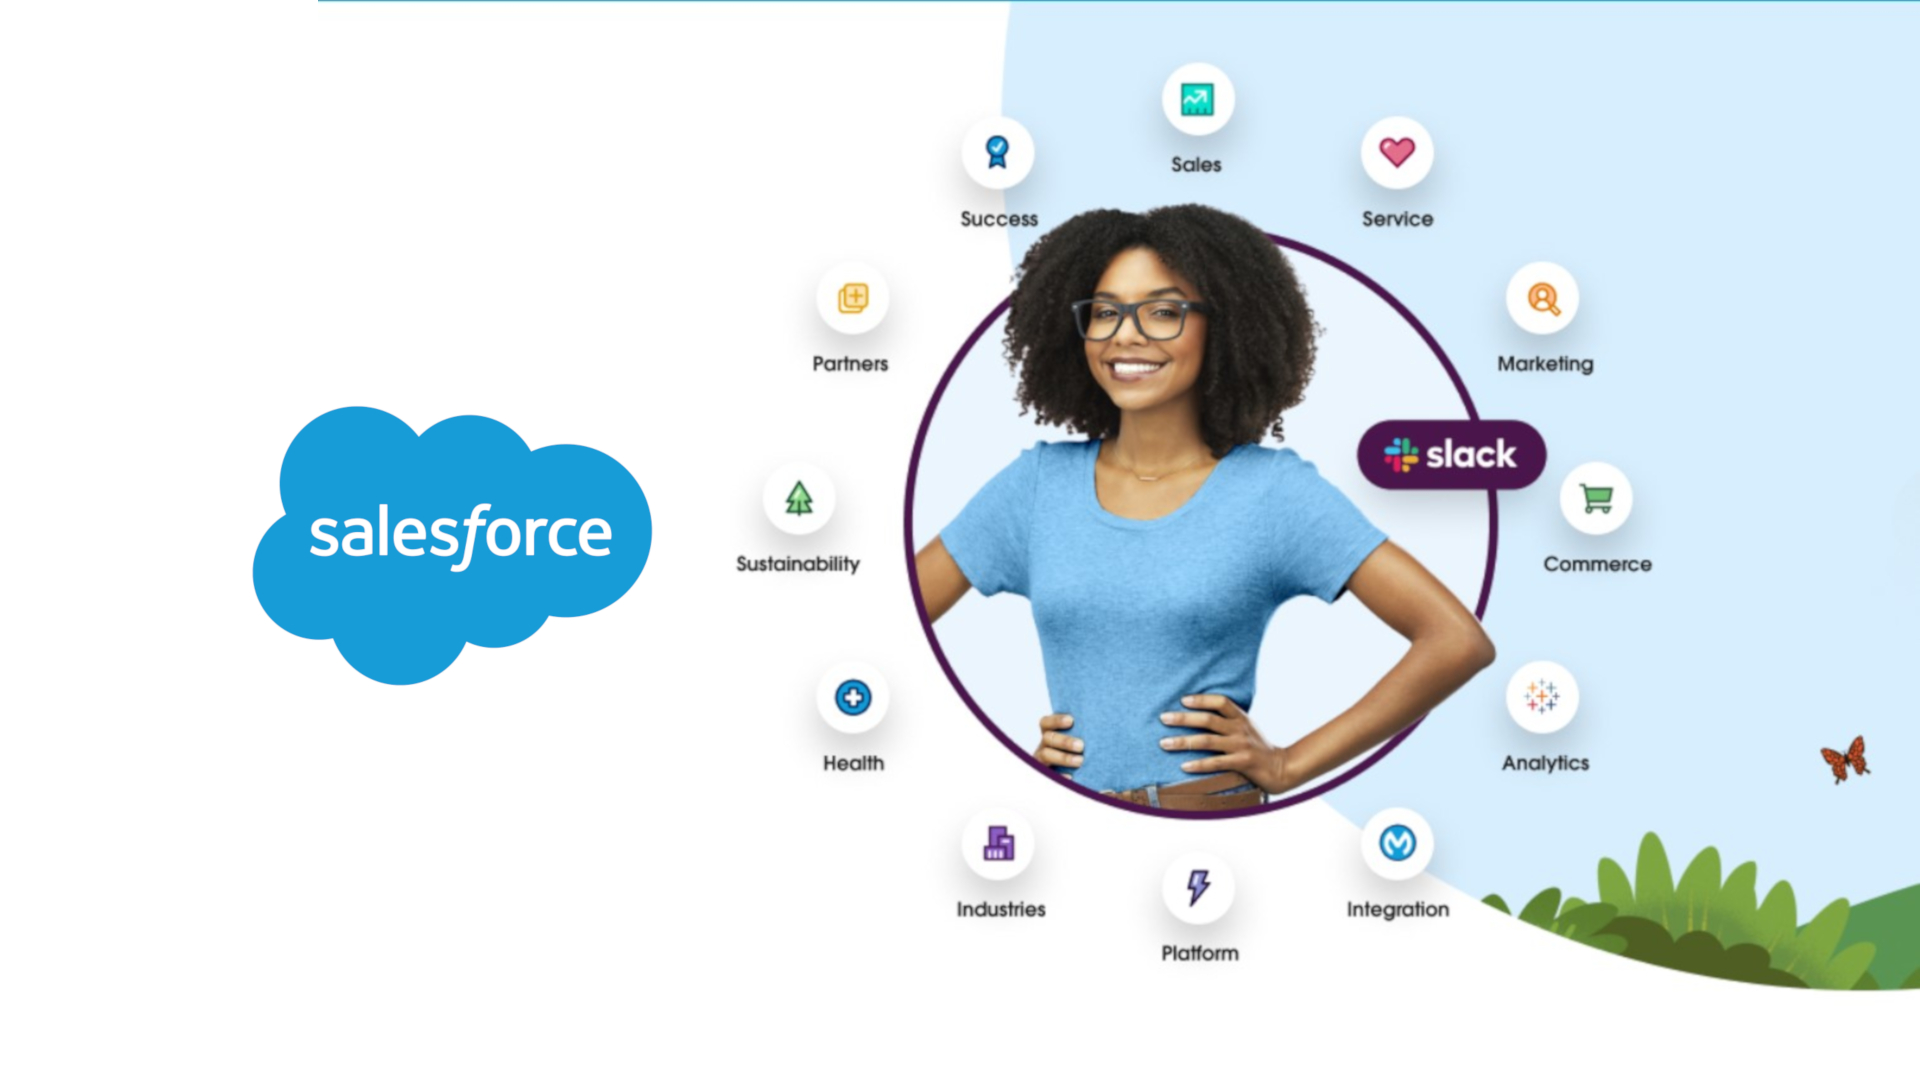 Wanita yang dikelilingi oleh ikon produk Salesforce, dengan logo Salesforce di sebelah kiri